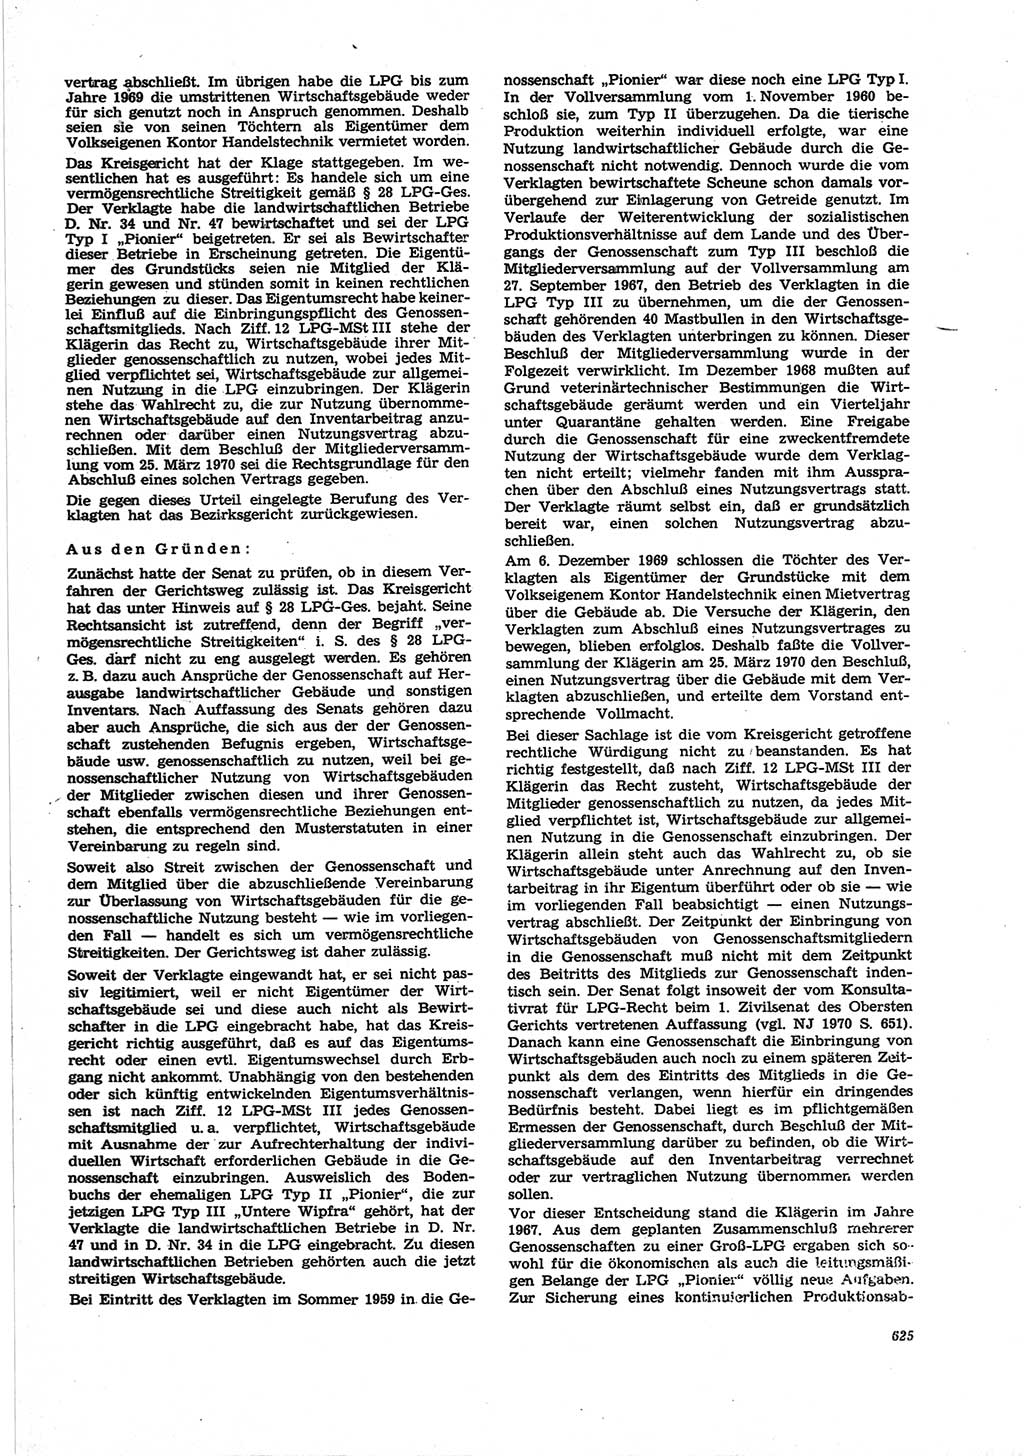 Neue Justiz (NJ), Zeitschrift für Recht und Rechtswissenschaft [Deutsche Demokratische Republik (DDR)], 25. Jahrgang 1971, Seite 625 (NJ DDR 1971, S. 625)